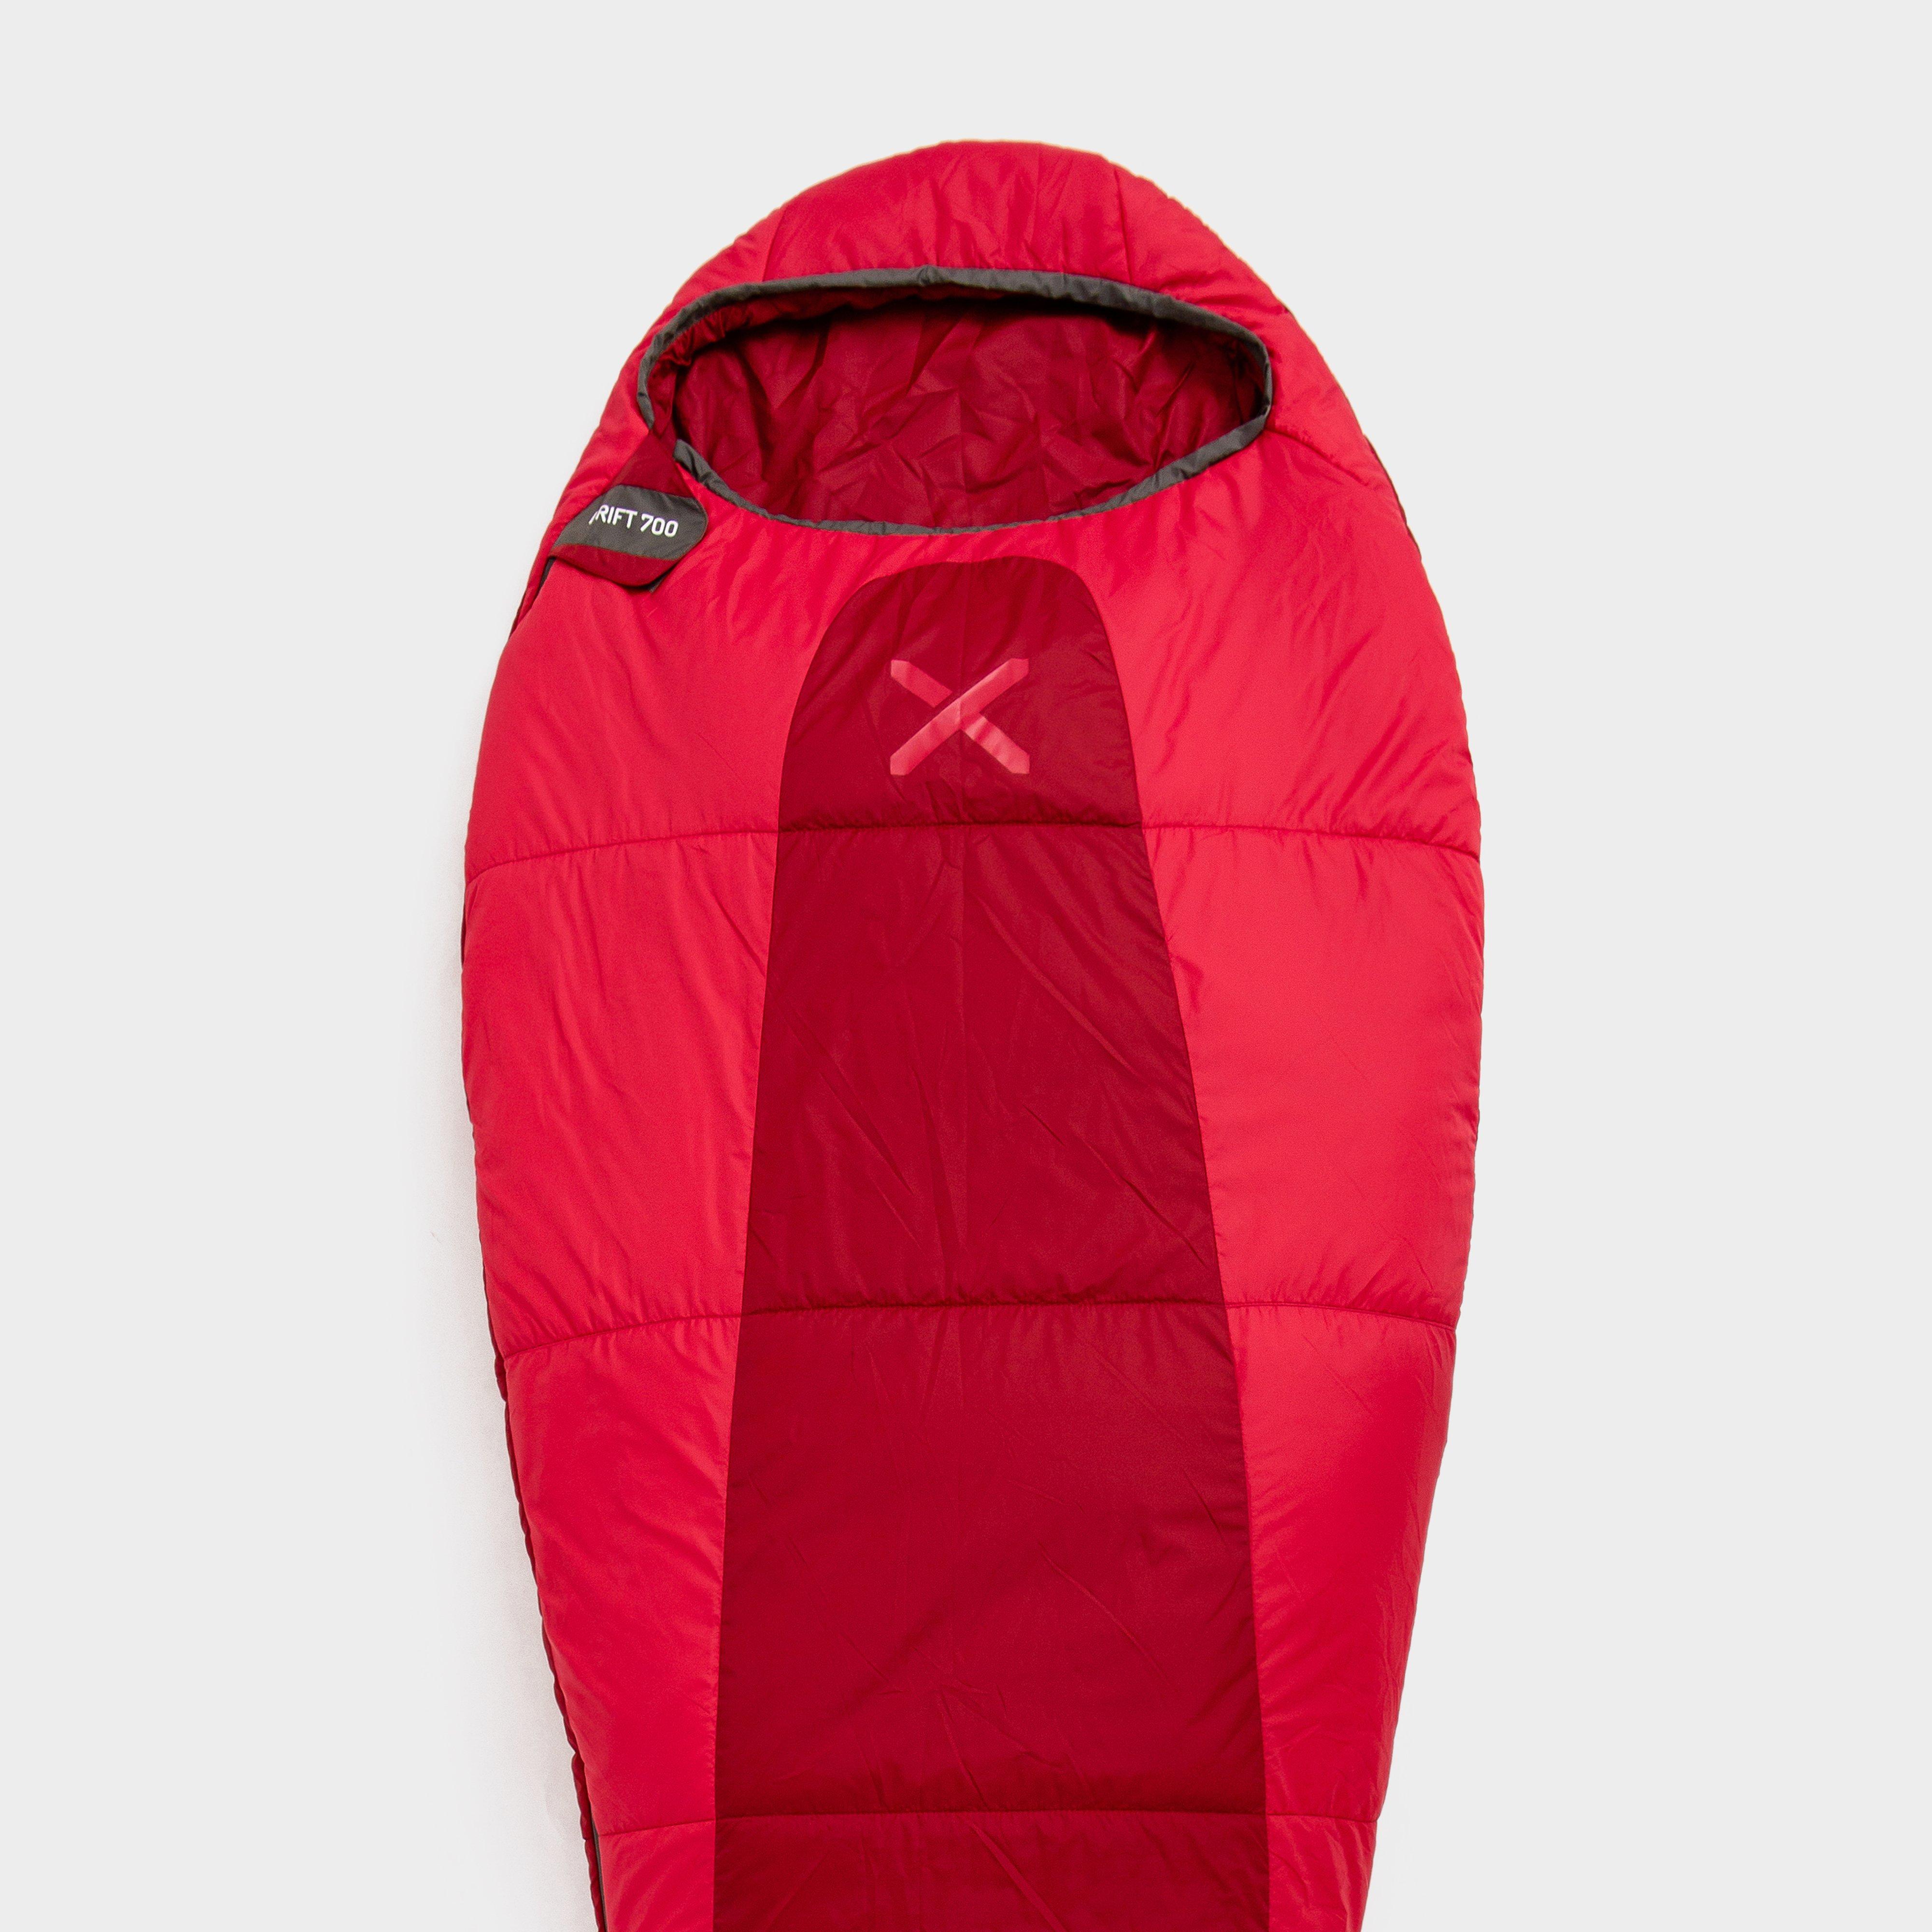  OEX Drift 700 Sleeping Bag, Red